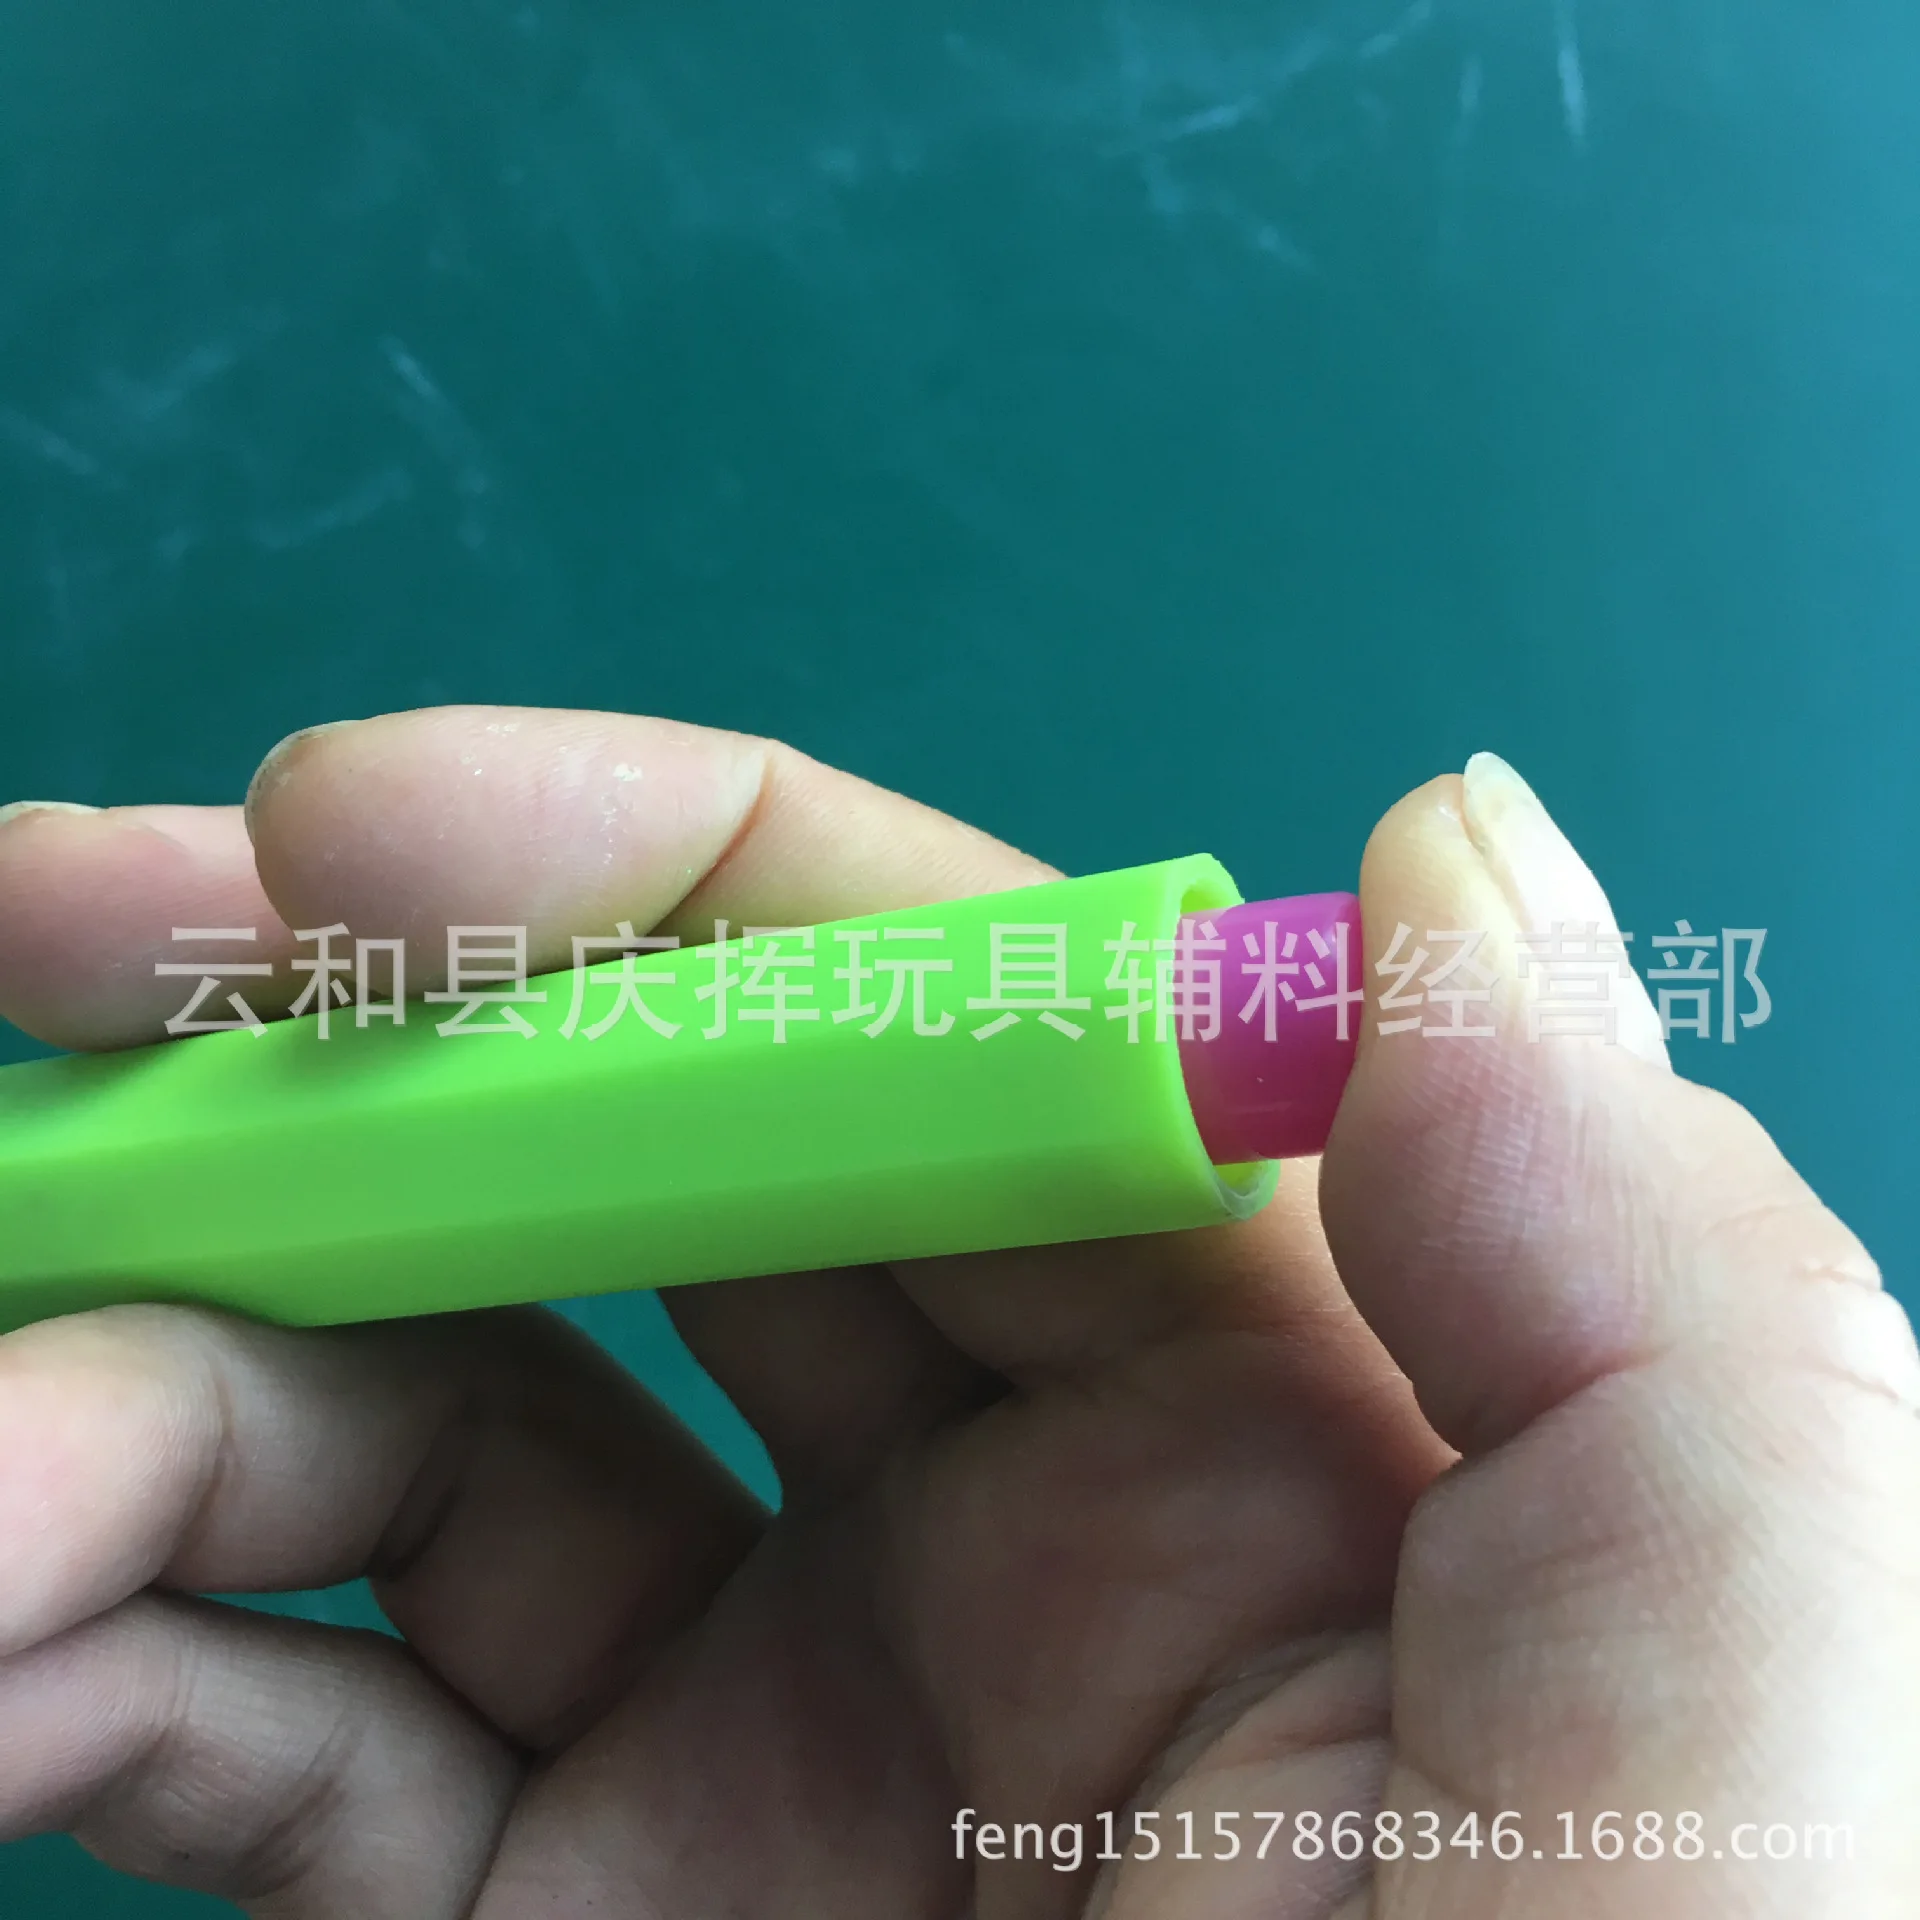 5 цвет пластиковый держатель для мела не грязный Мел для рук комплект окружающей среды детская игровая доска для рисования аксессуары